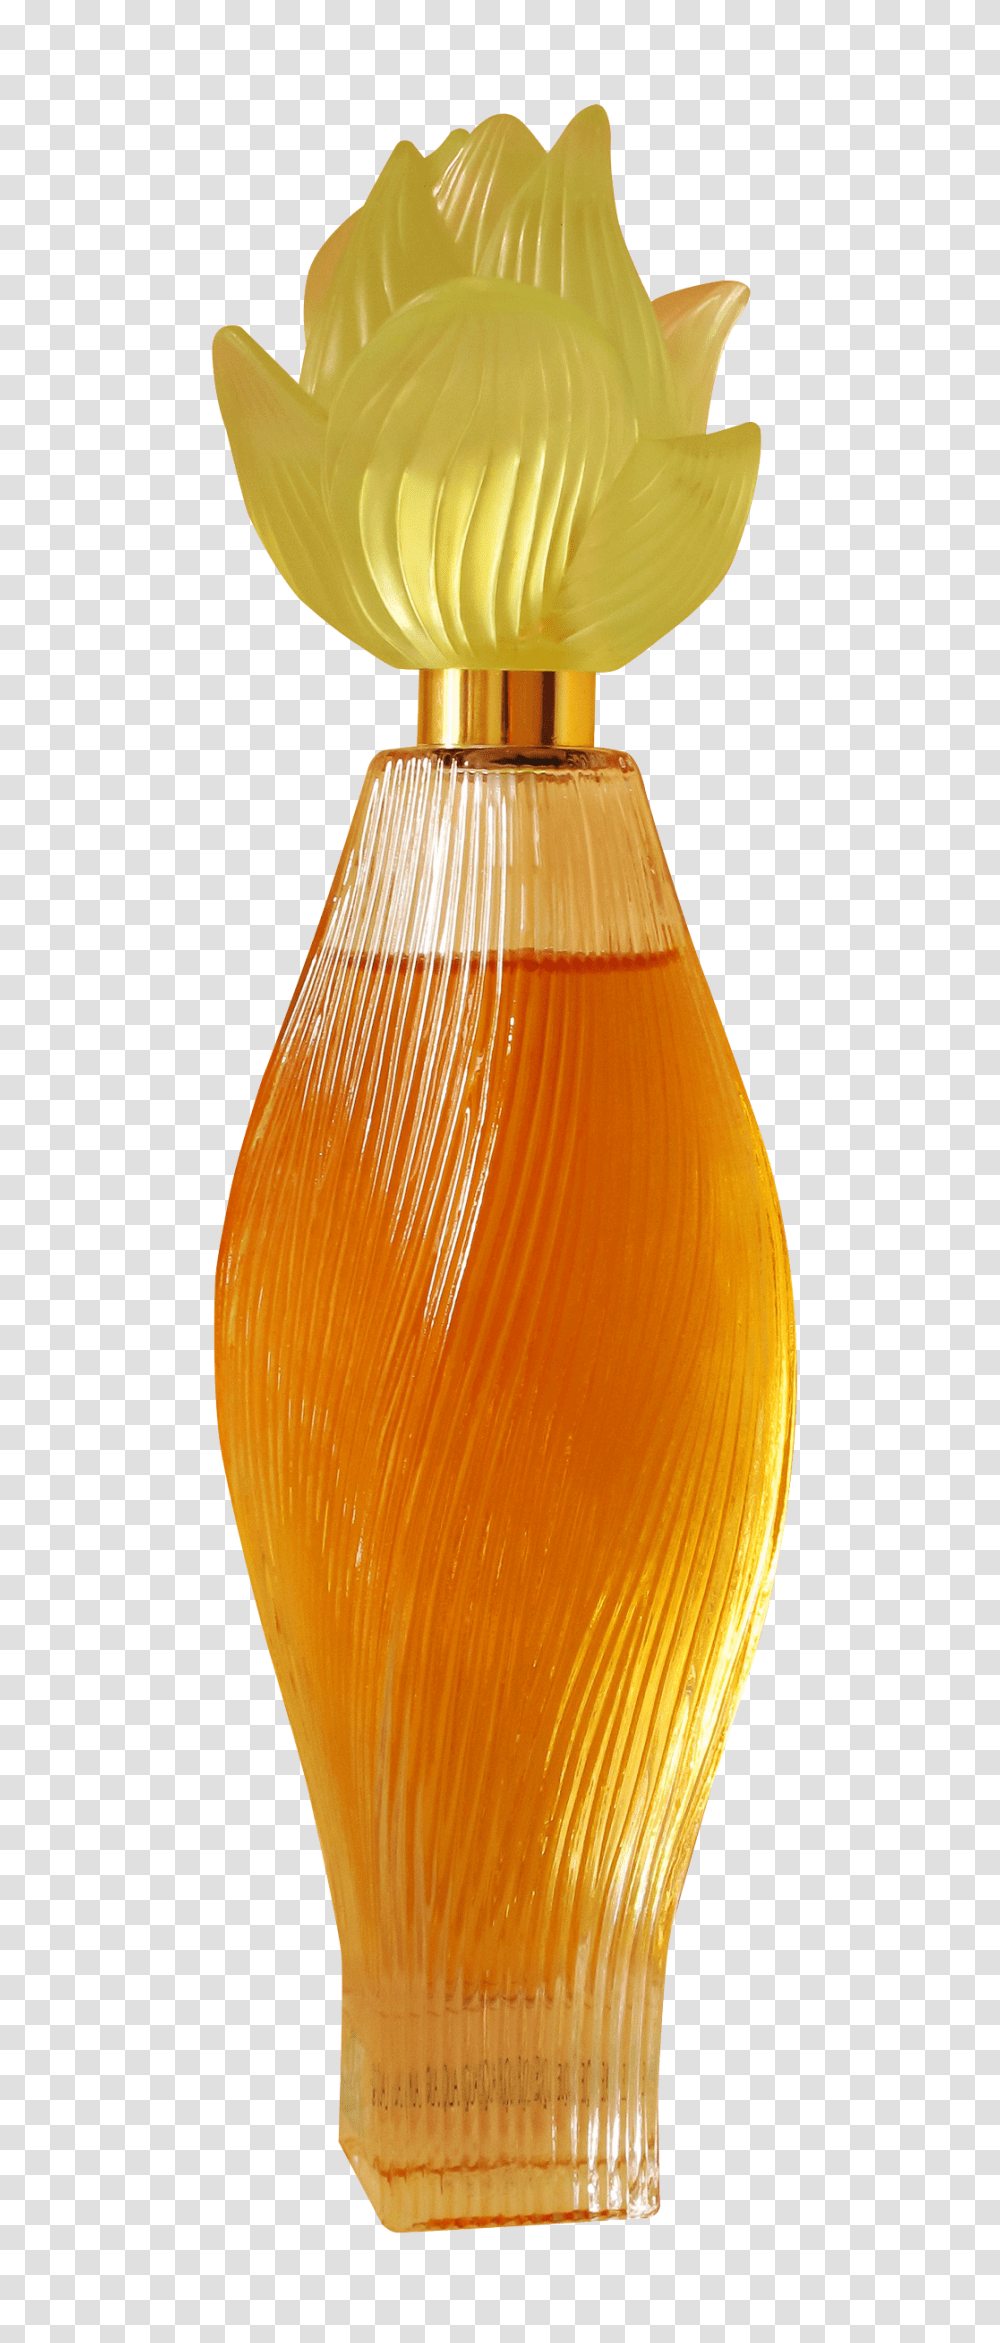 Perfume Bottle Image, Lamp, Beverage, Drink, Juice Transparent Png